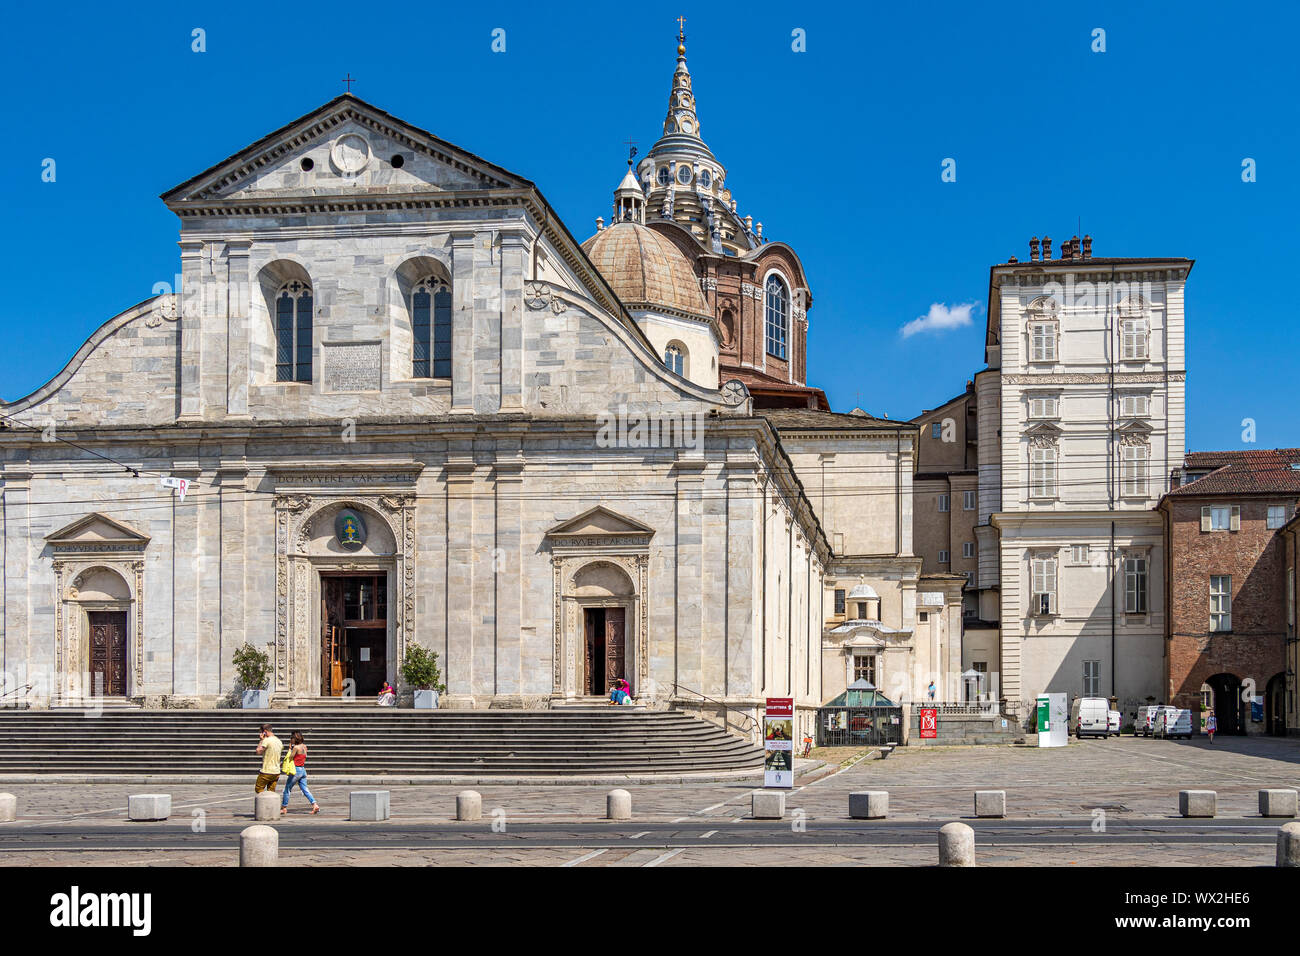 L'extérieur de la Cathédrale de Turin une cathédrale catholique romaine dédiée à Saint Jean le Baptiste, Turin, Italie Banque D'Images